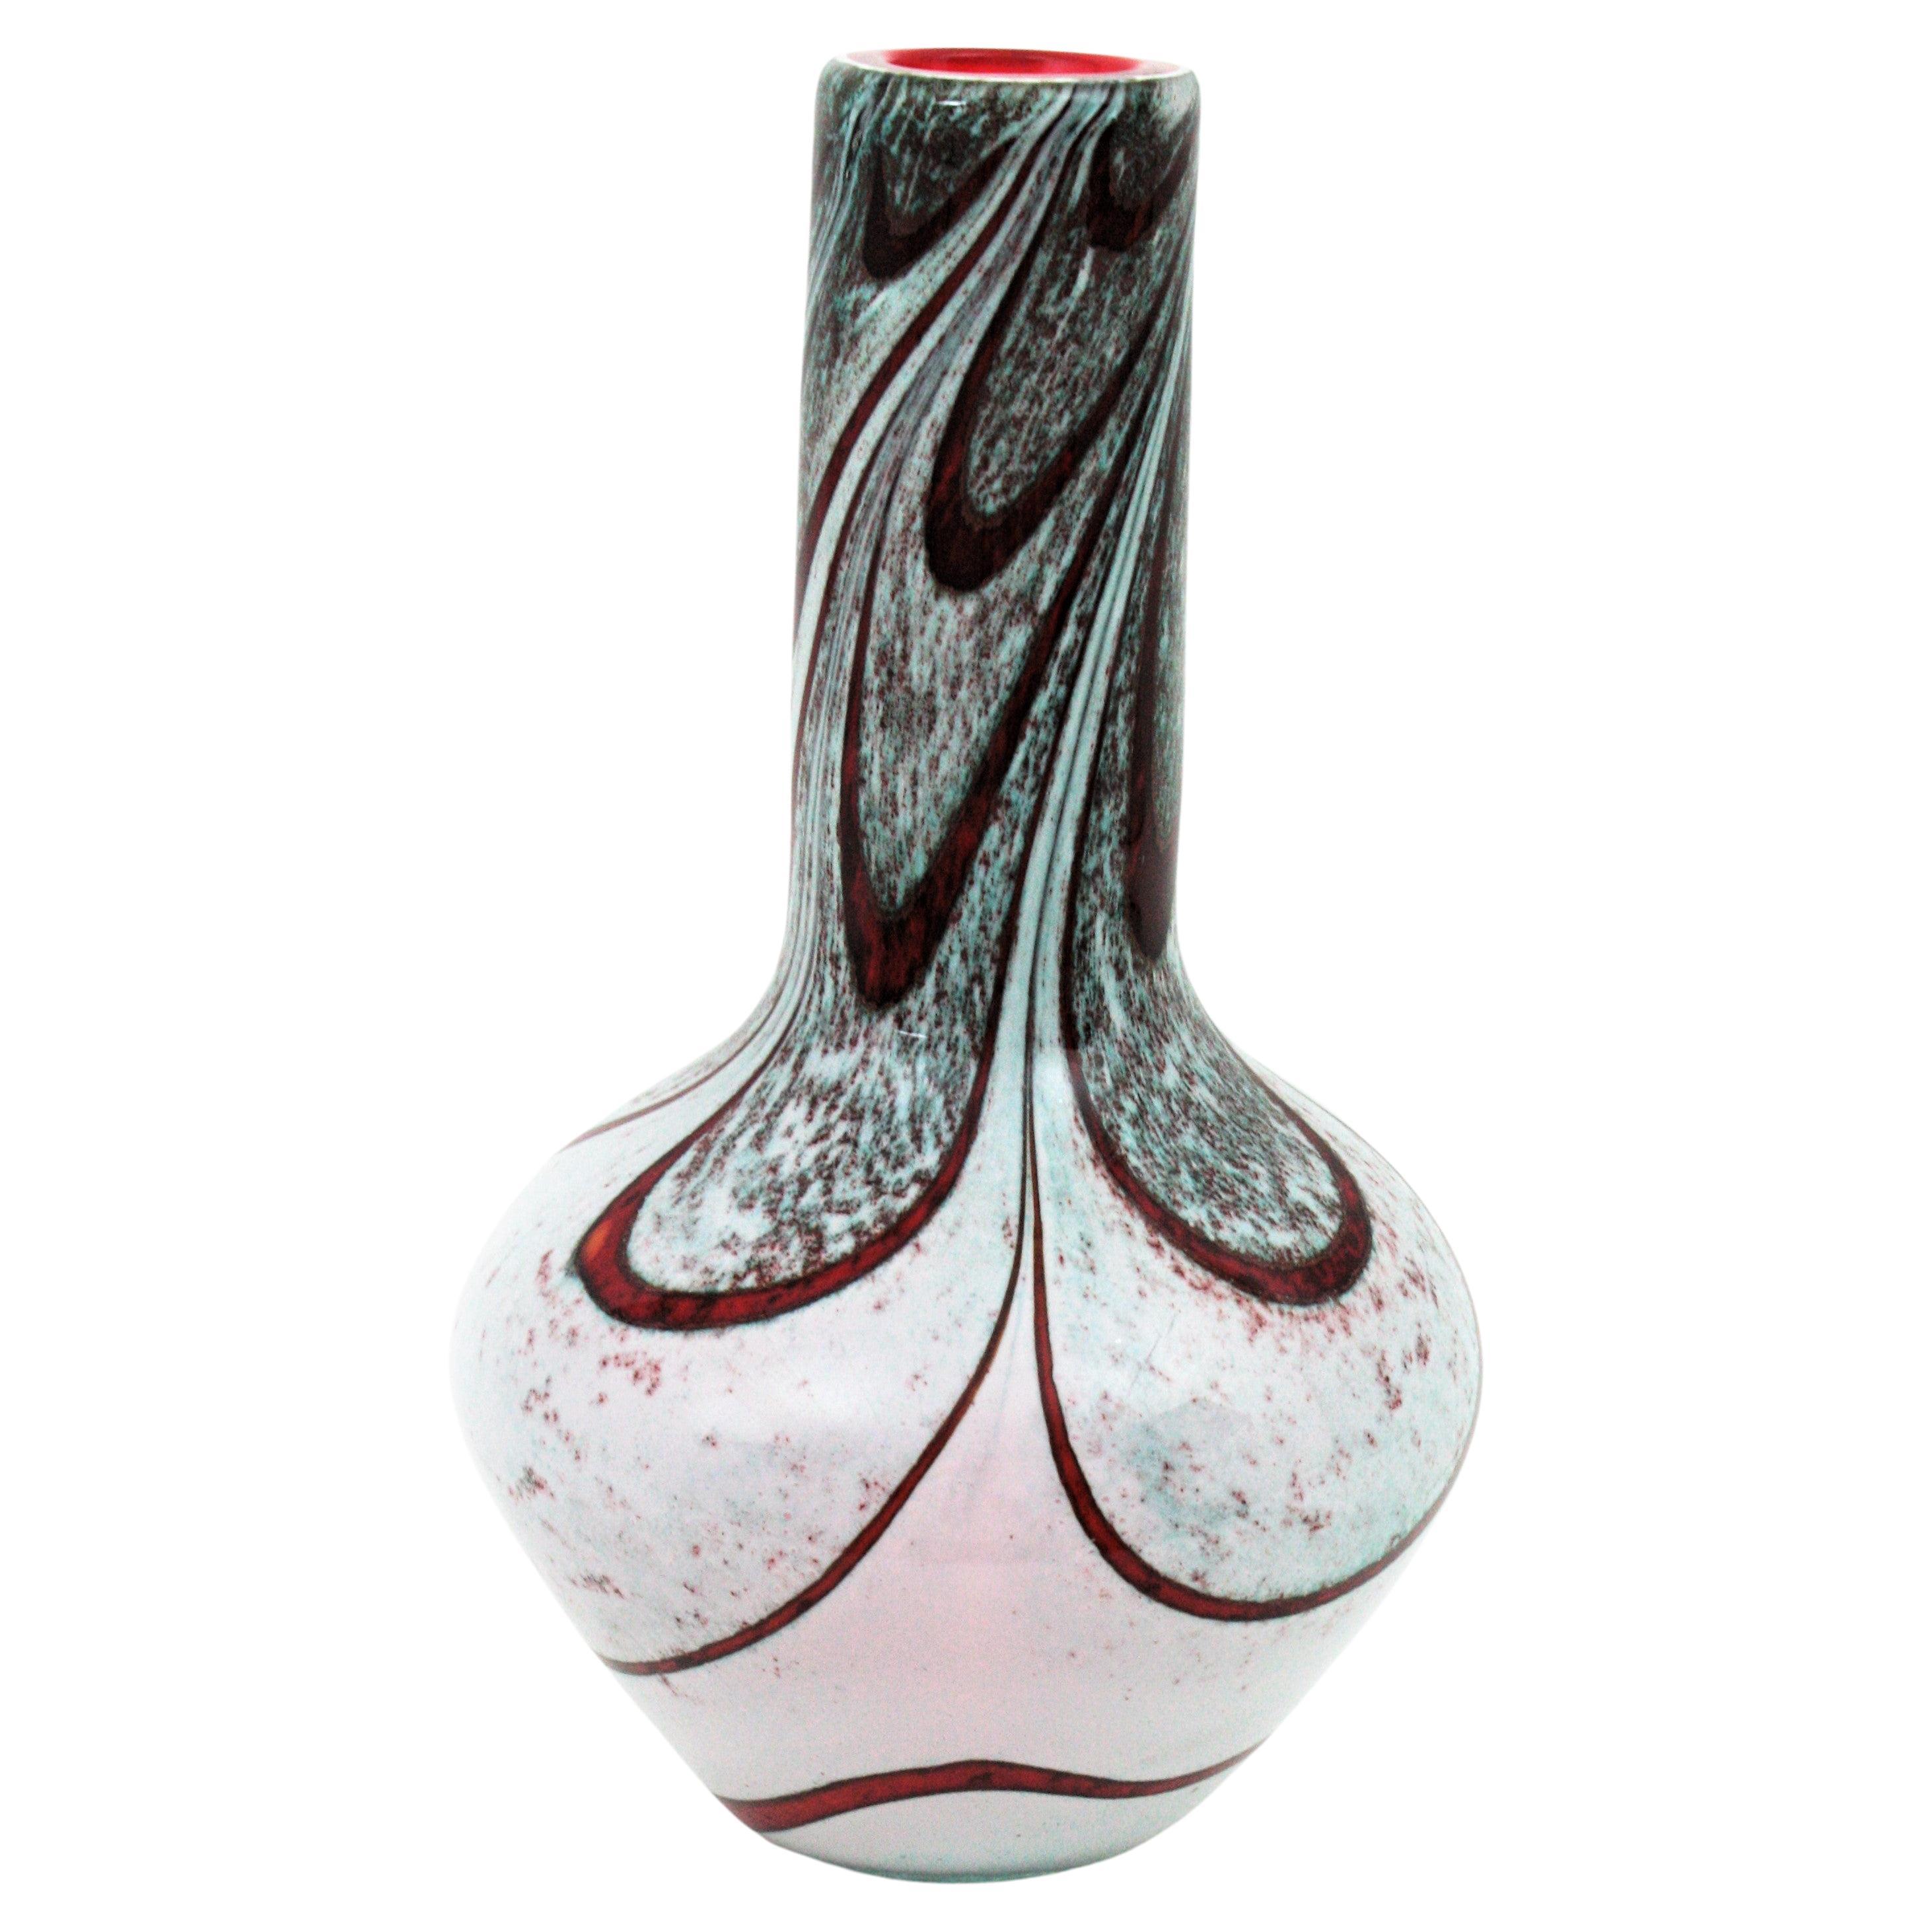 Carlo Moretti, Murano-Kunstglasvase mit weißen und roten Streifen, 1960er Jahre